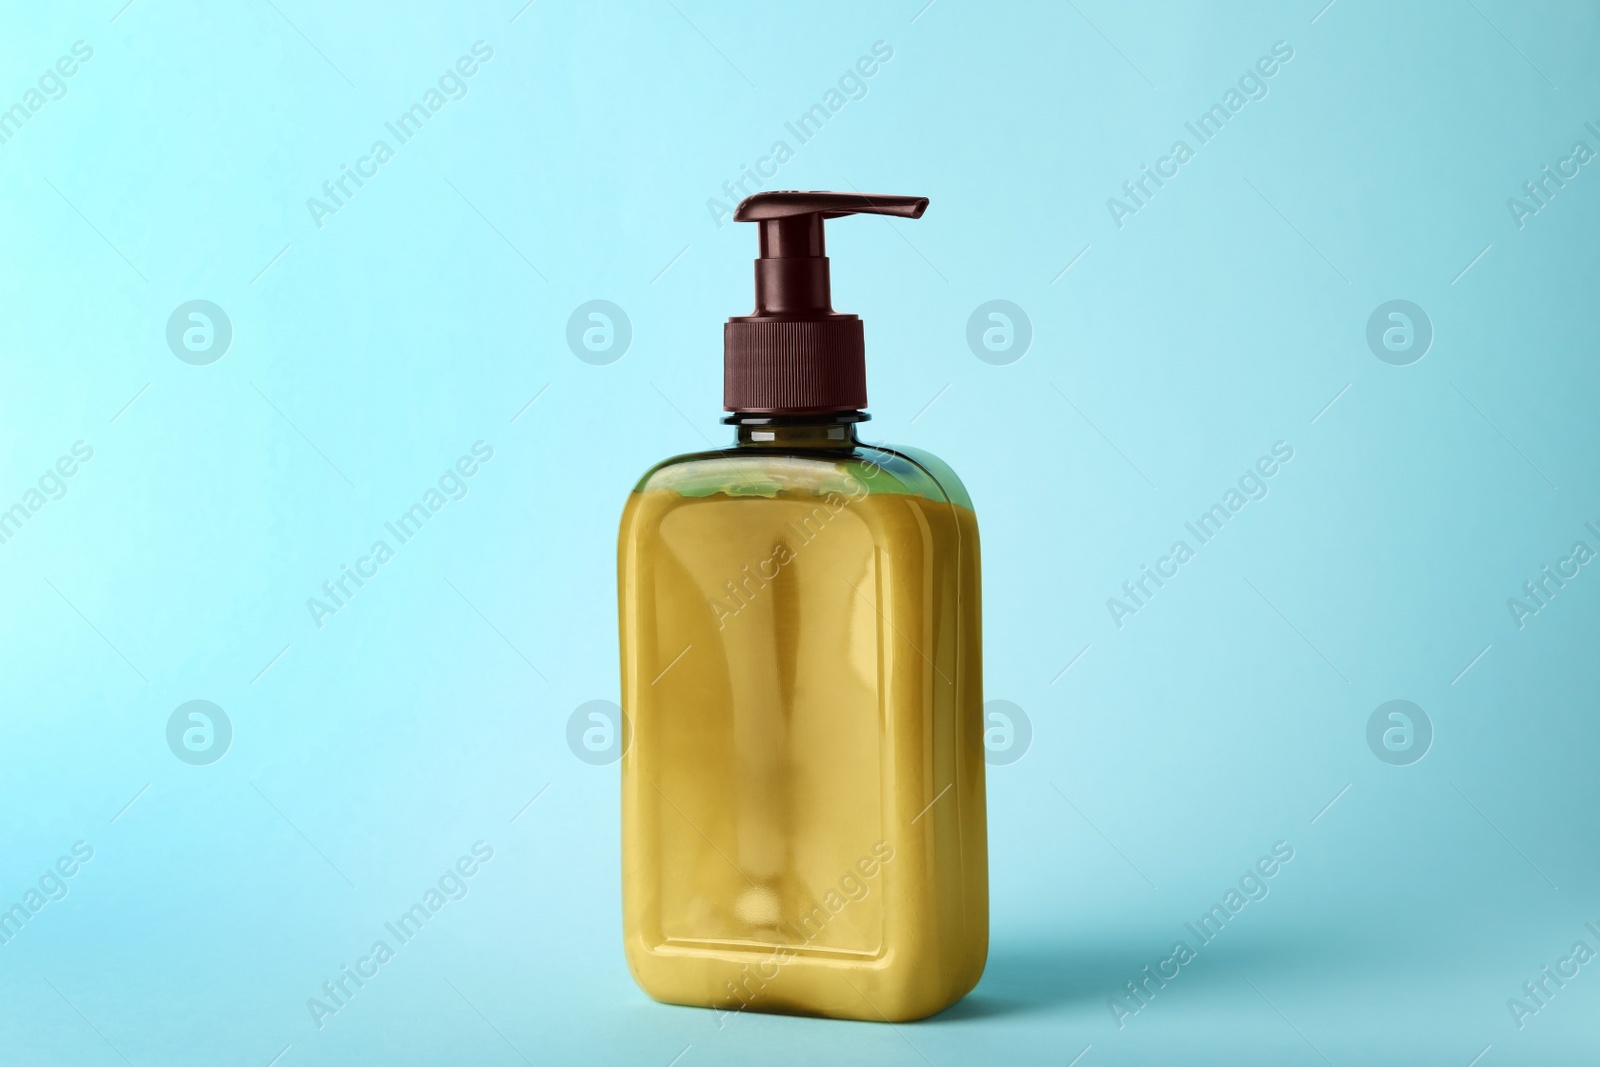 Photo of Bottle of shampoo on light blue background